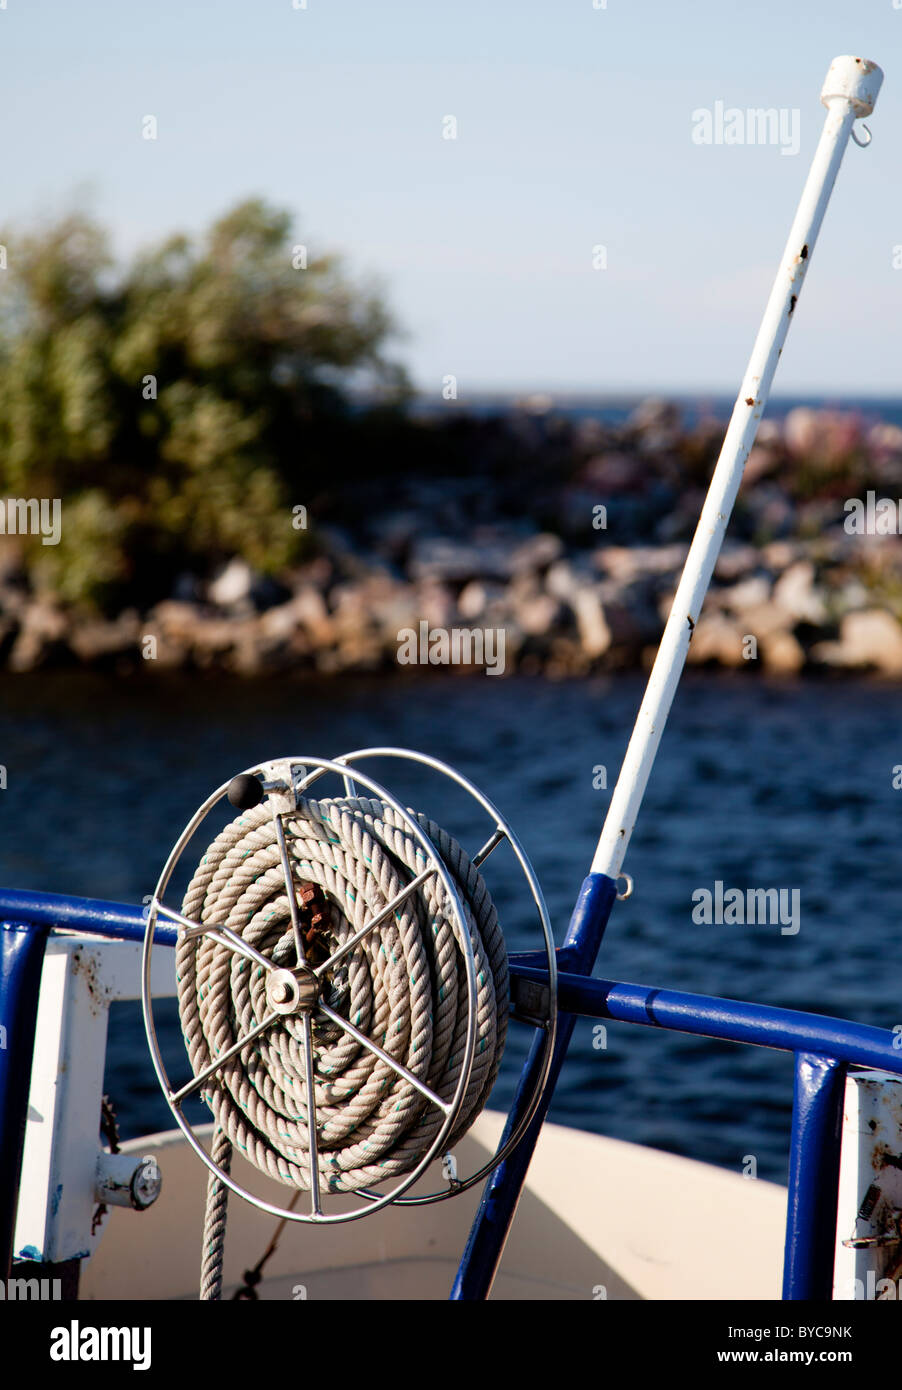 Rouleau de corde de chanvre enroulés dans un bateau Banque D'Images